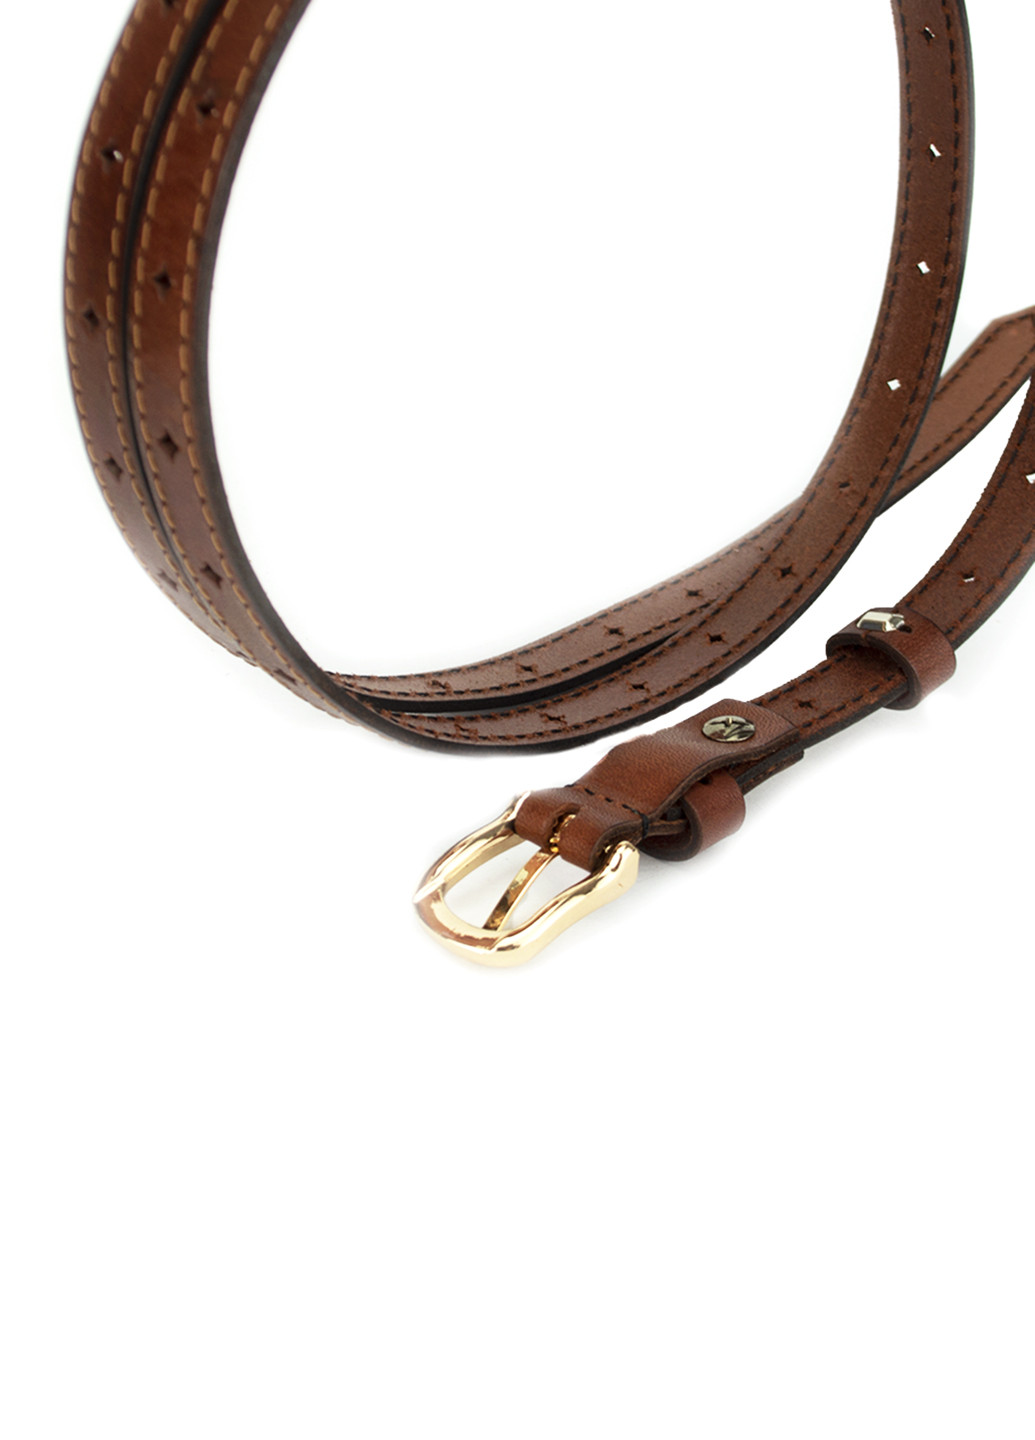 Ремень женский кожаный узкий коричневый SF-1525 brown (115 см) SFIP (253267886)